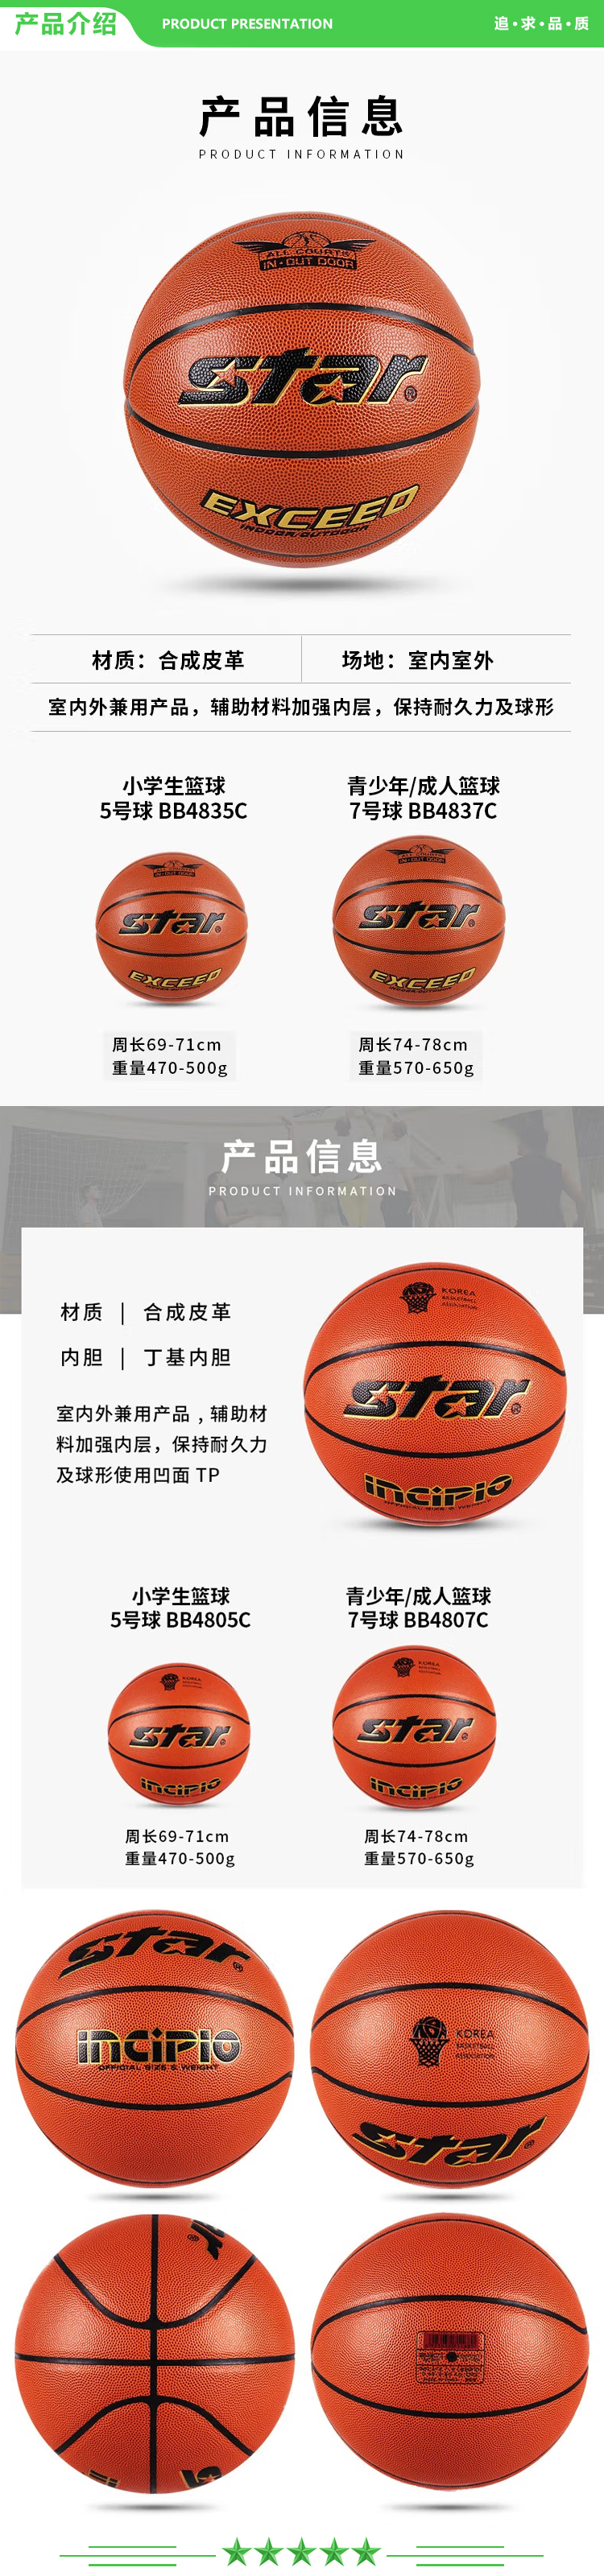 世达 star BB4807C (7号成人用球) 篮球中学生耐磨PU篮球室内外初中生专用球.jpg